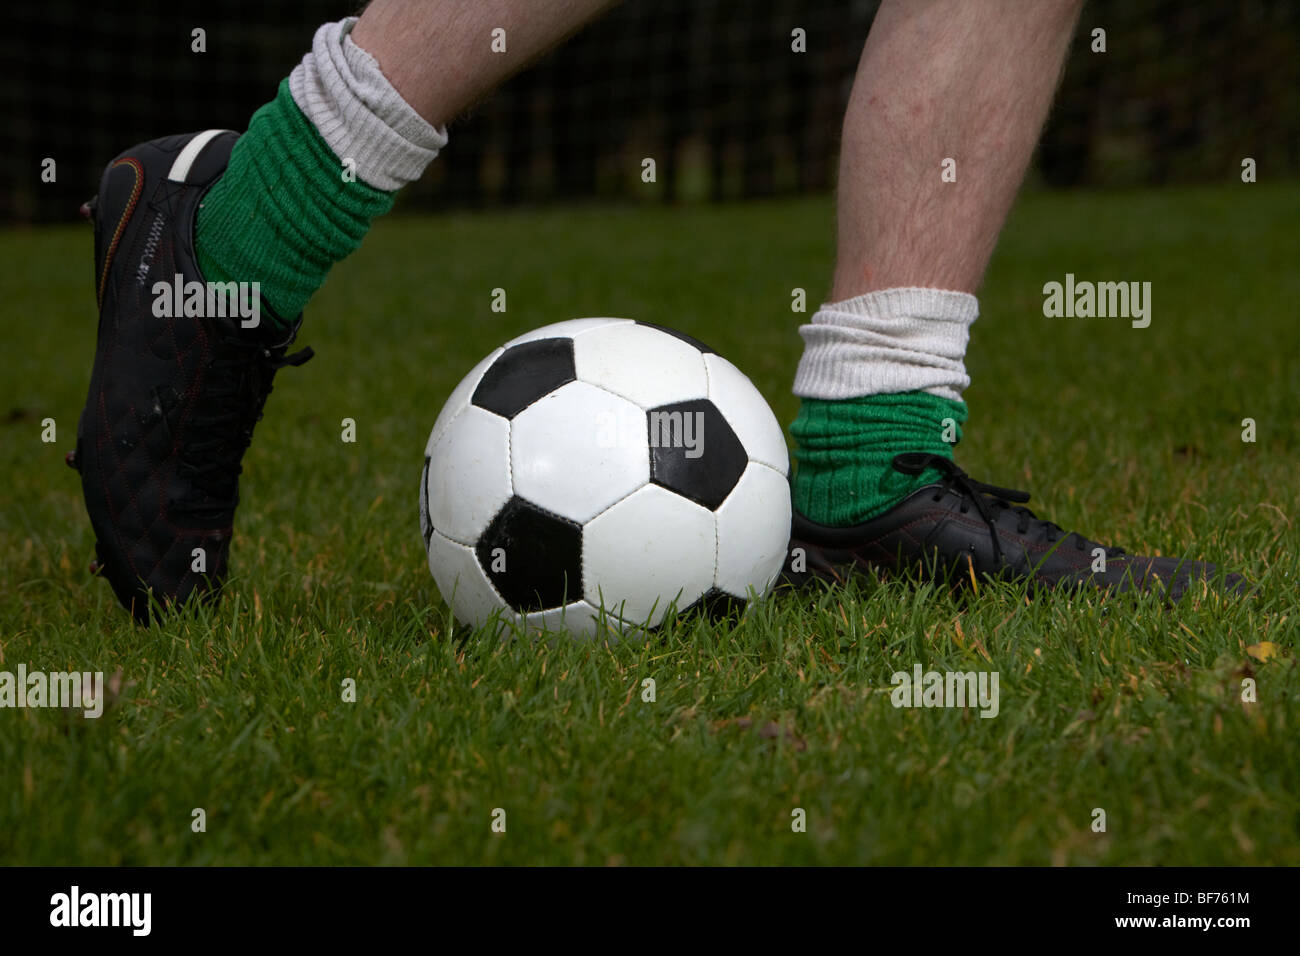 Fußball-Fußball-Spieler vorwärts Bewegung einer Kugel üben Modell zu kicken freigegeben Bild Stockfoto